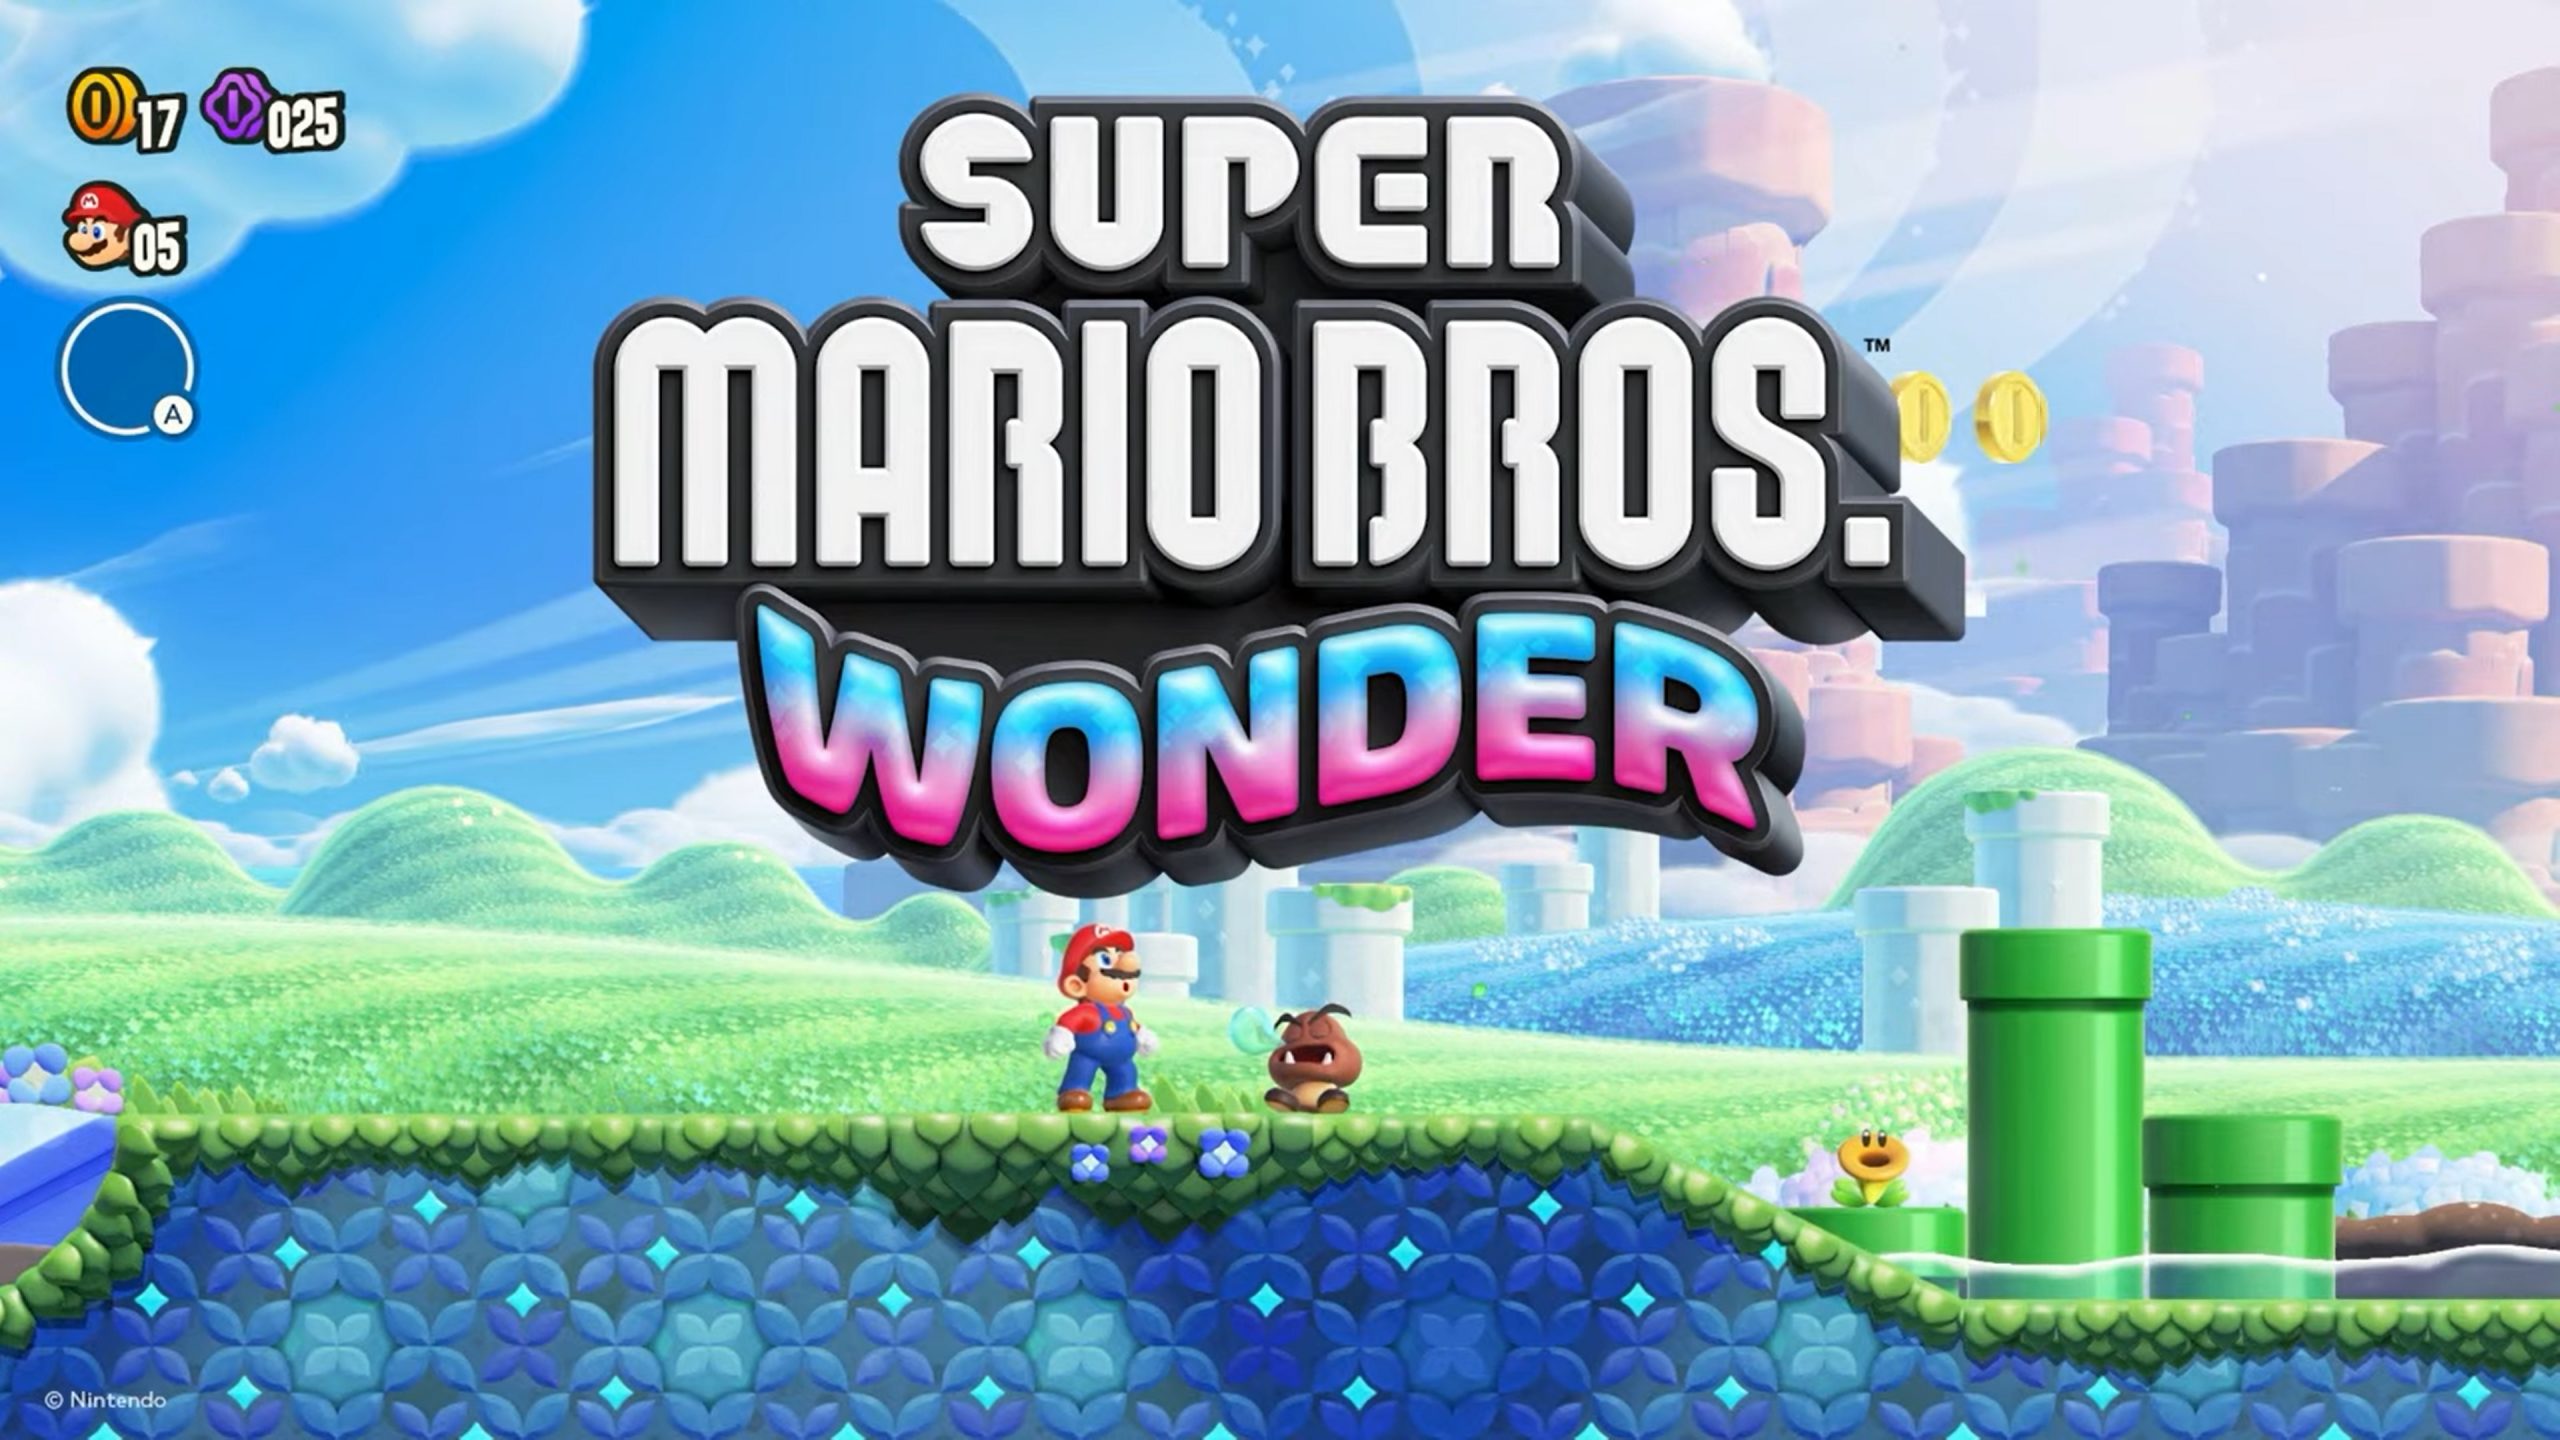 Le copie fisiche di Super Mario Bros. Wonder vendute in Giappone sono state oltre 638 mila. Il gioco ha conquistato il primo posto nelle classifiche